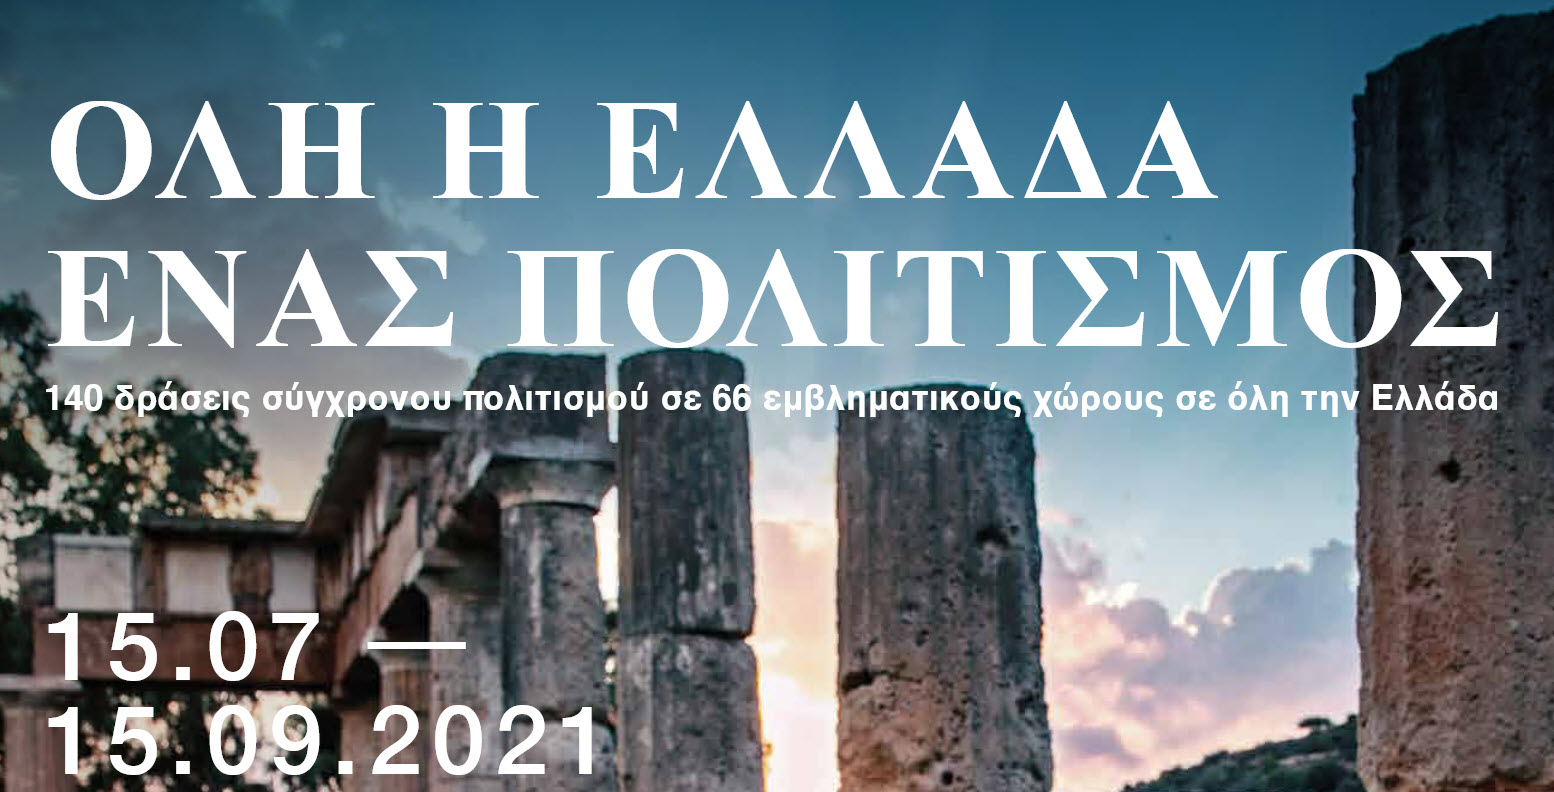 «Όλη η Ελλάδα ένας Πολιτισμός» | Πρόγραμμα – Καλοκαίρι 2021